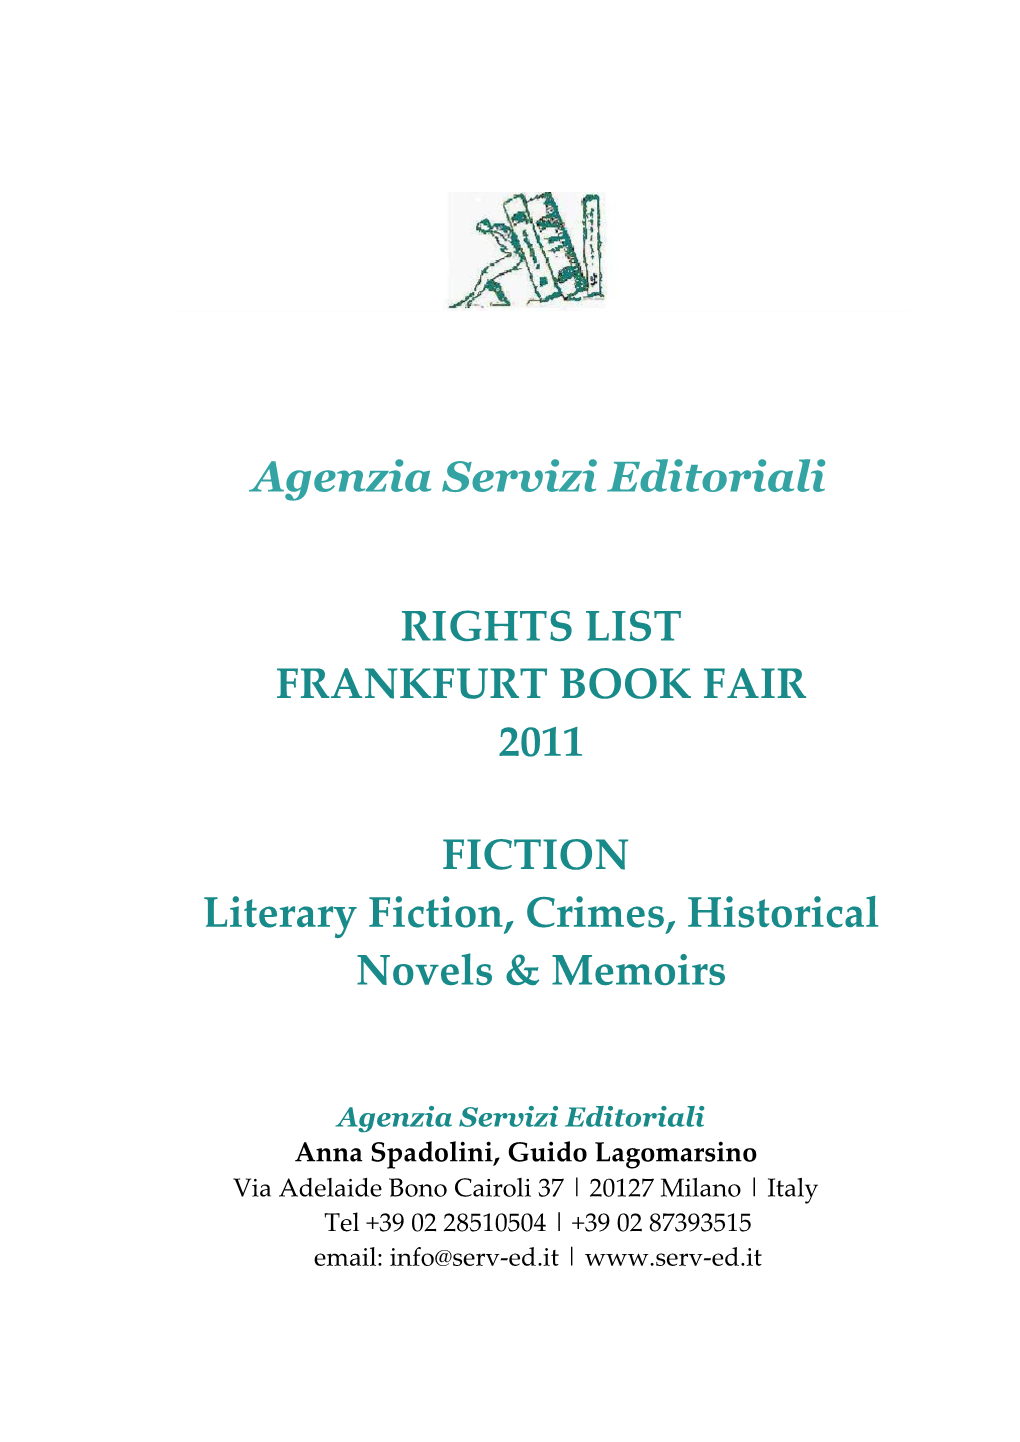 Agenzia Servizi Editoriali RIGHTS LIST FRANKFURT BOOK FAIR